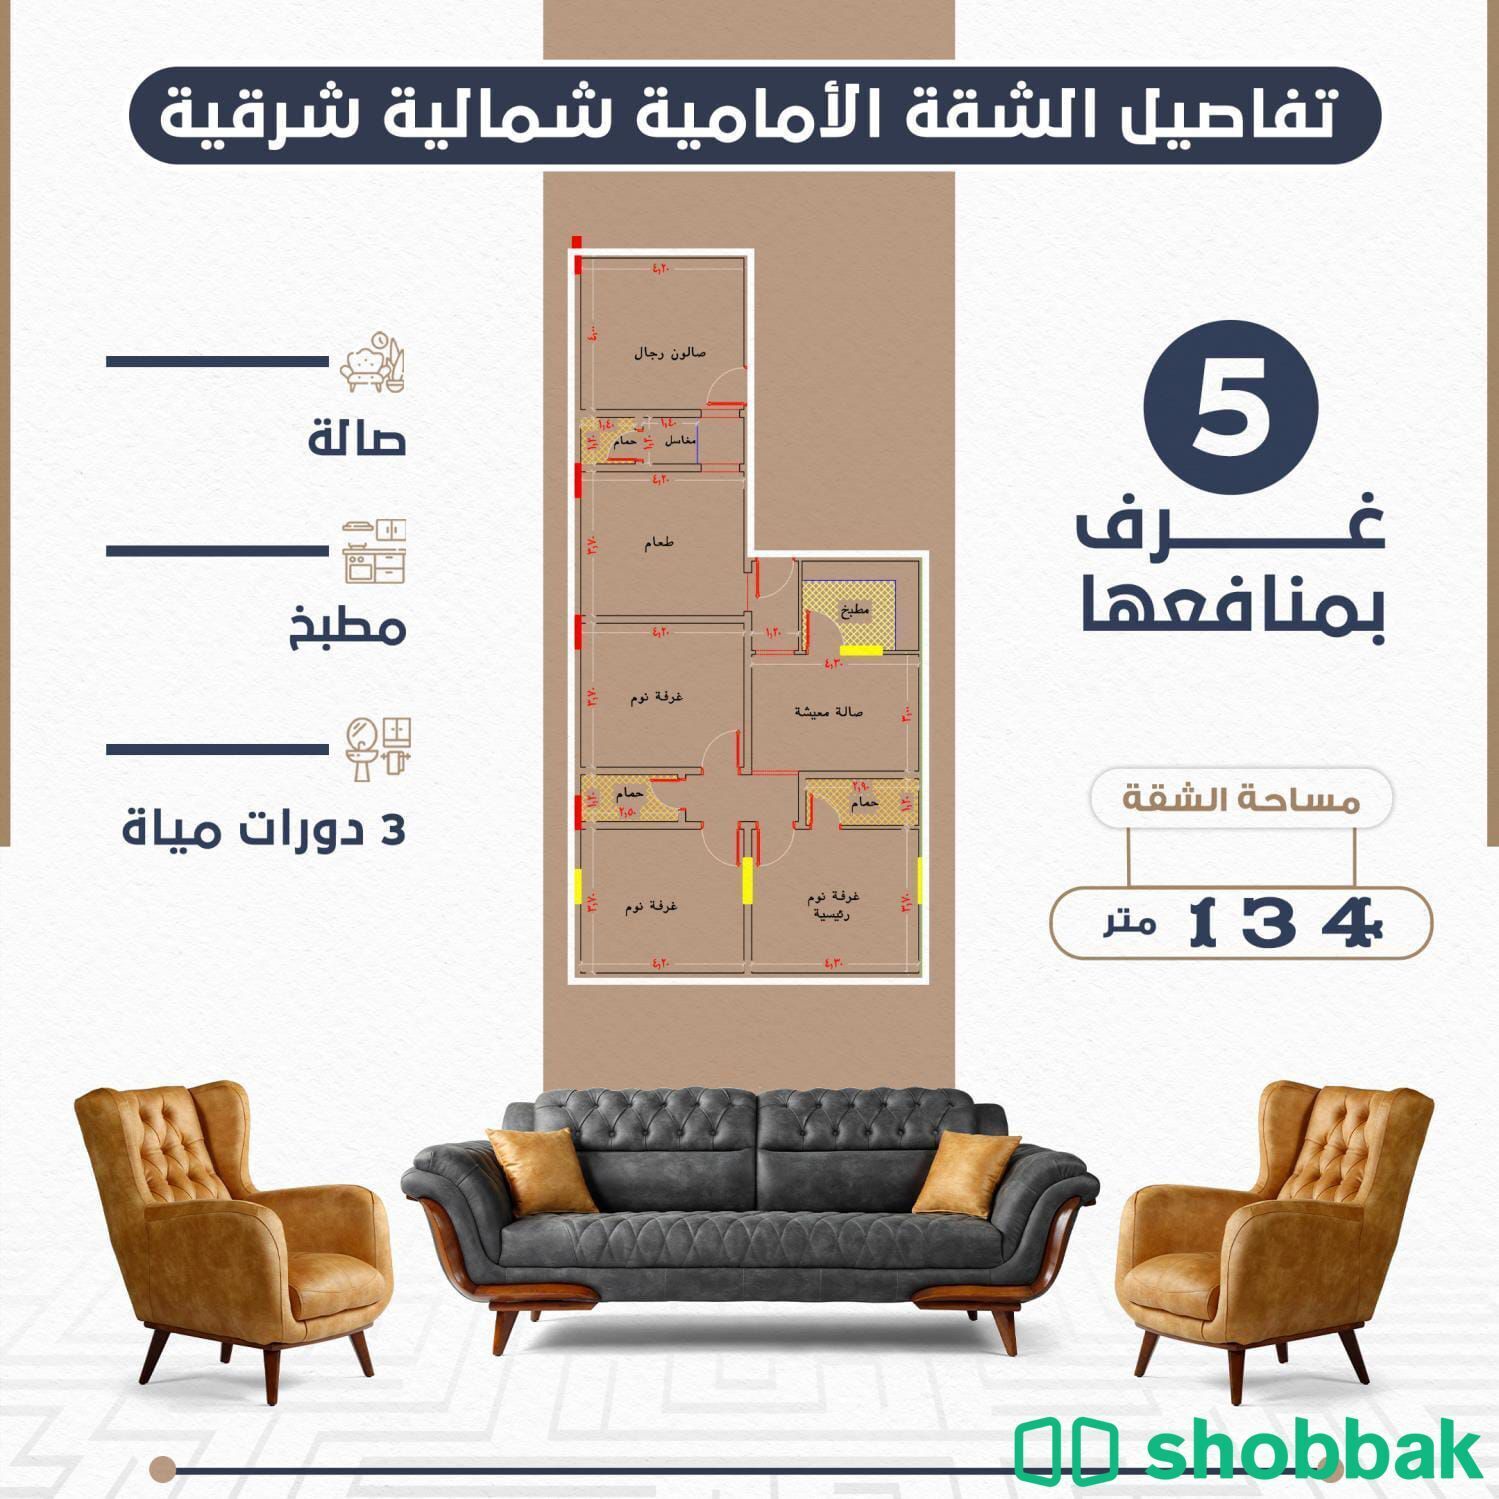 شقة 5 غرف بجدة حي النعيم امام حديقة مباشرة للبيع  Shobbak Saudi Arabia